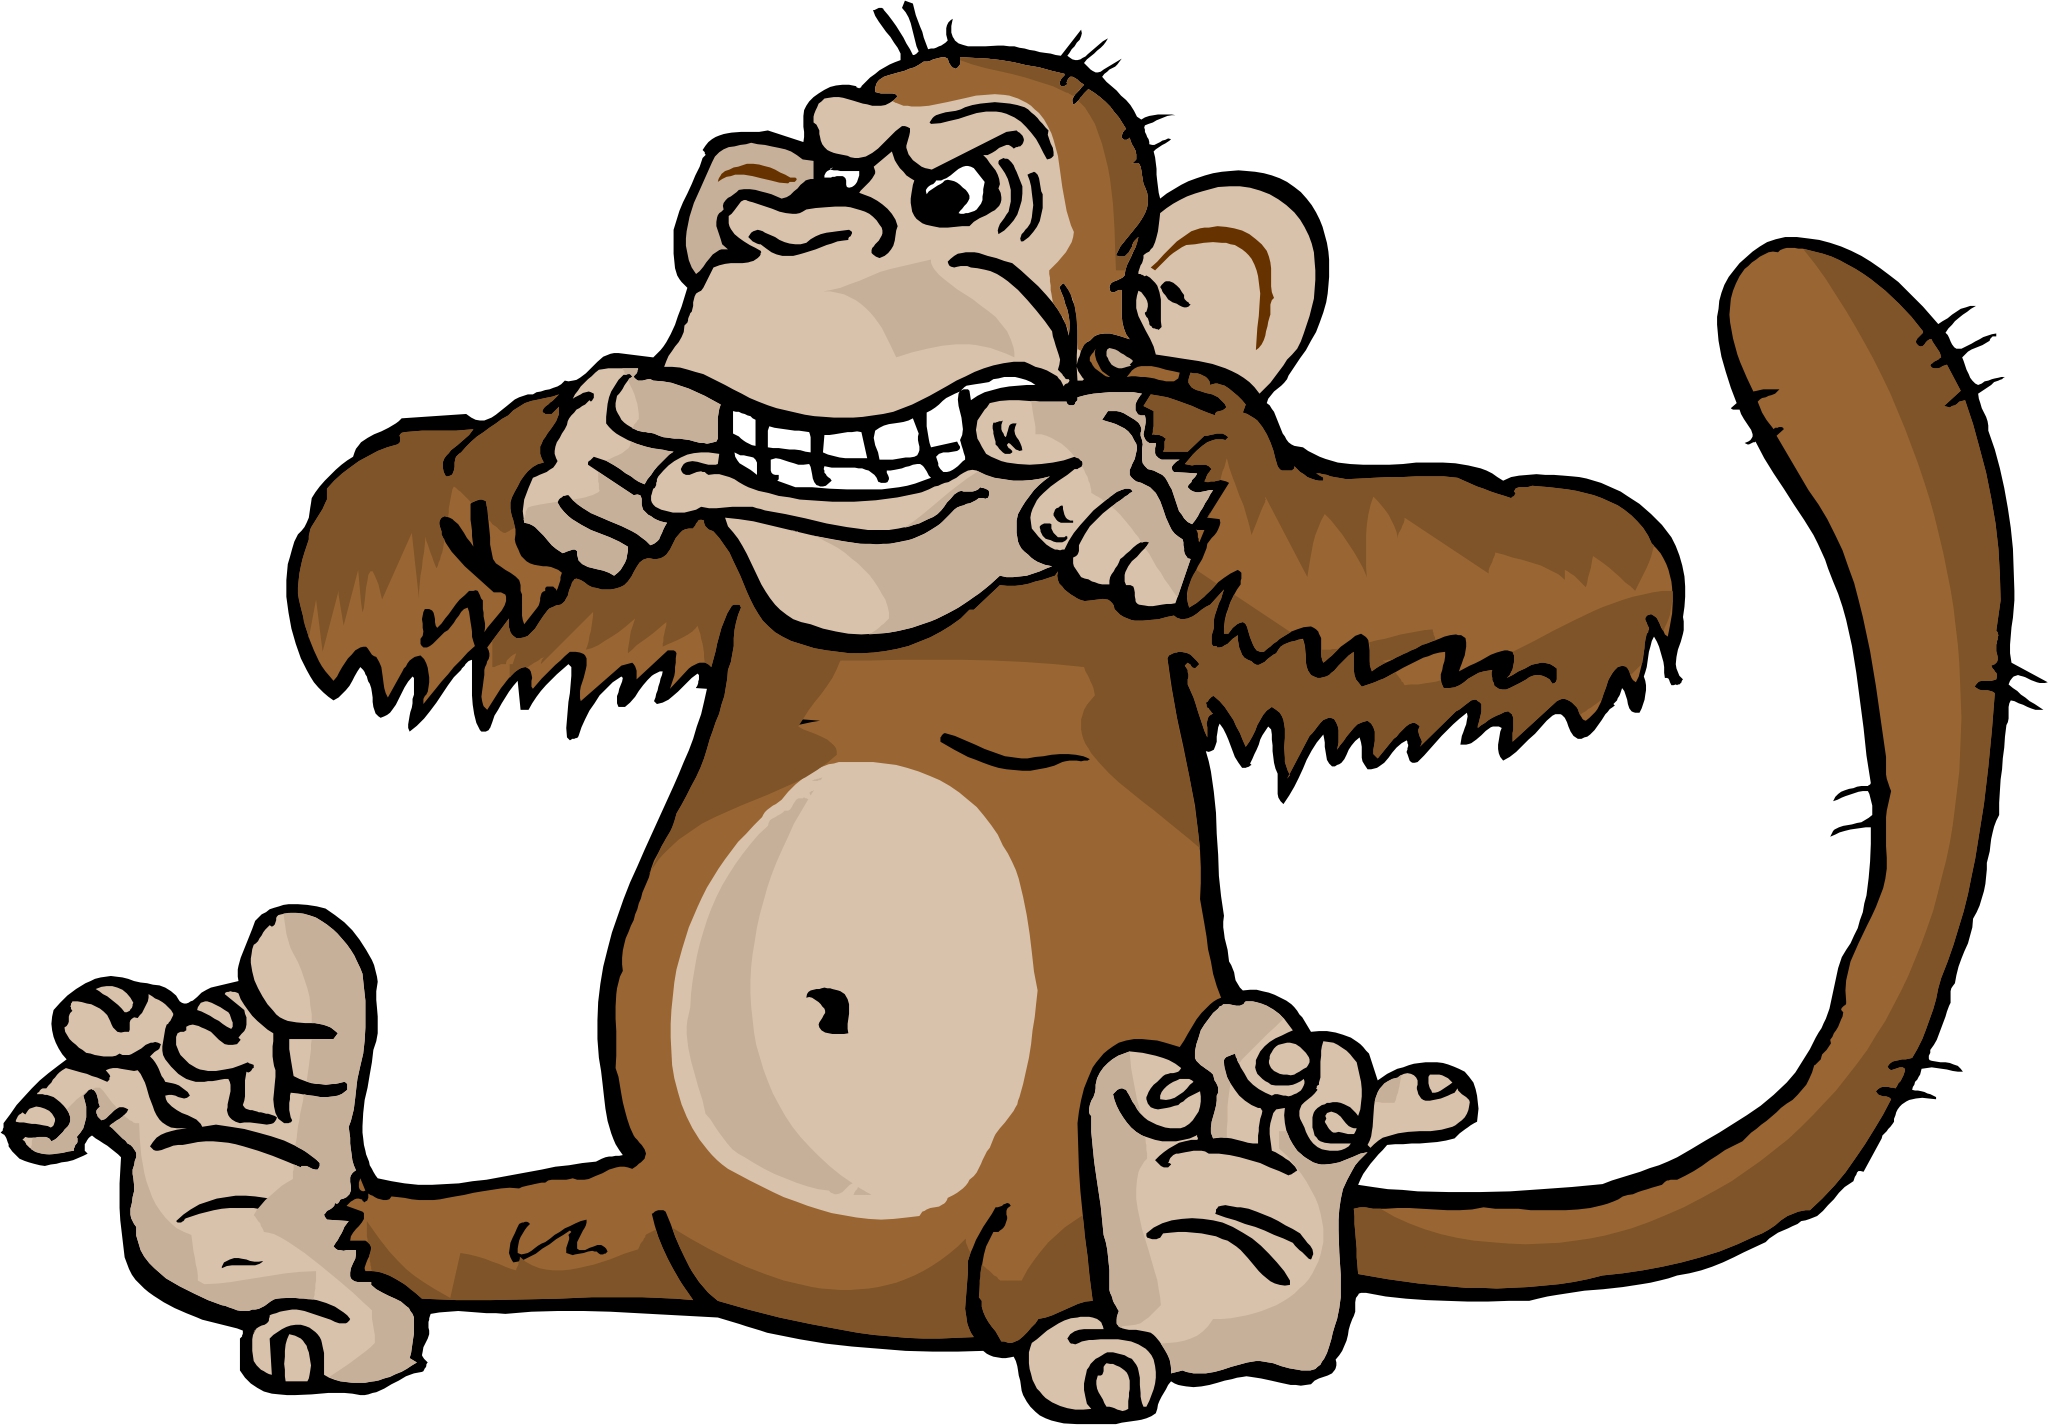 monkey animated clipart - photo #39